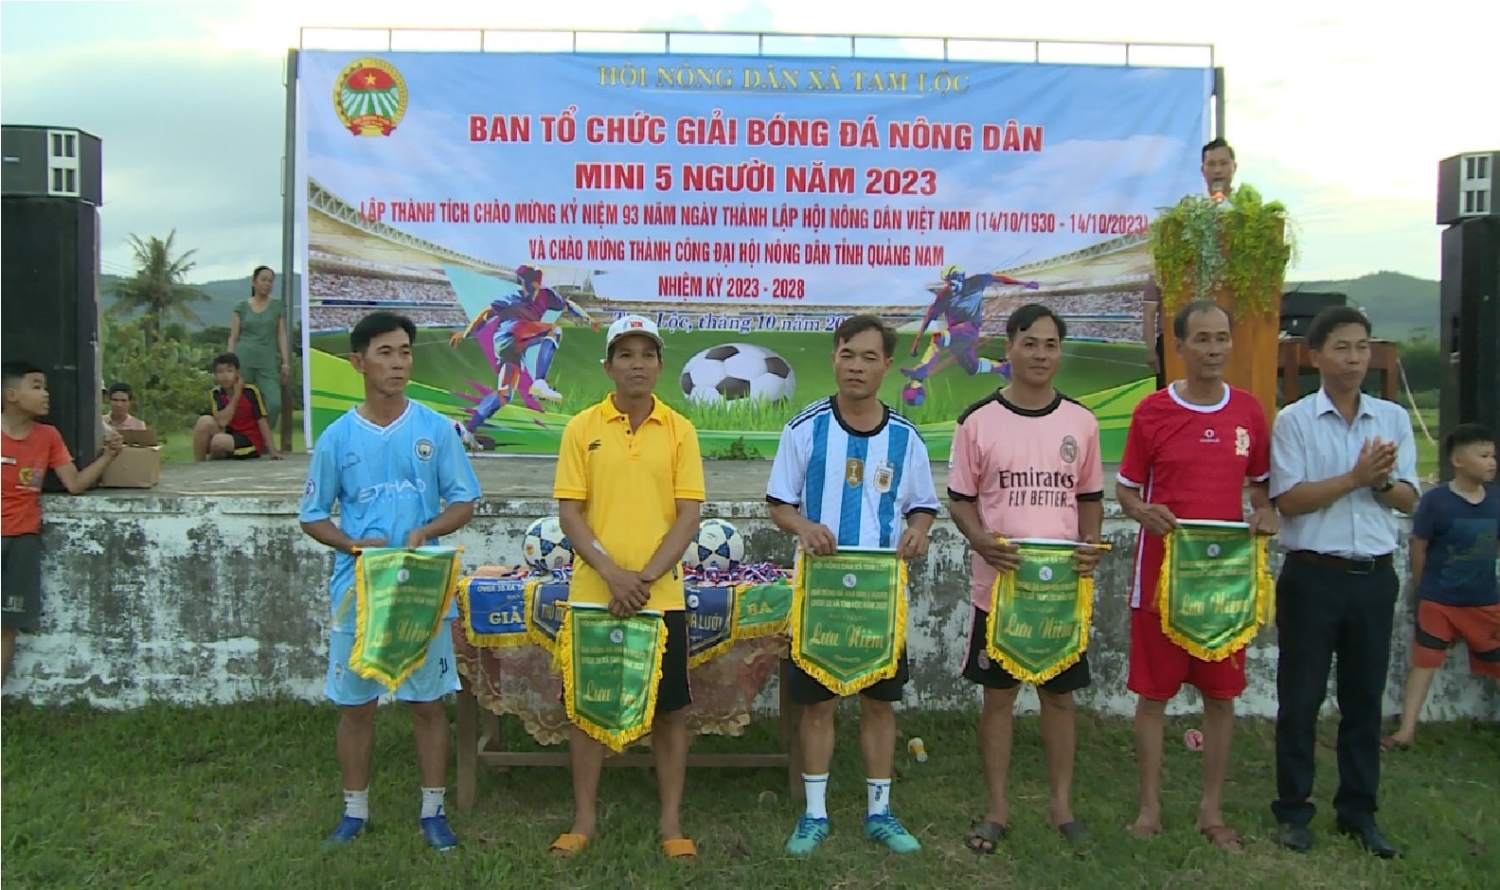 Hội Nông dân xã Tam Lộc tổ chức giải bóng đá Nông dân mini 5 người chào mừng kỷ niệm 93 năm ngày thành lập Hội Nông dân Việt Nam (14/10/1930 - 14/10/2023)